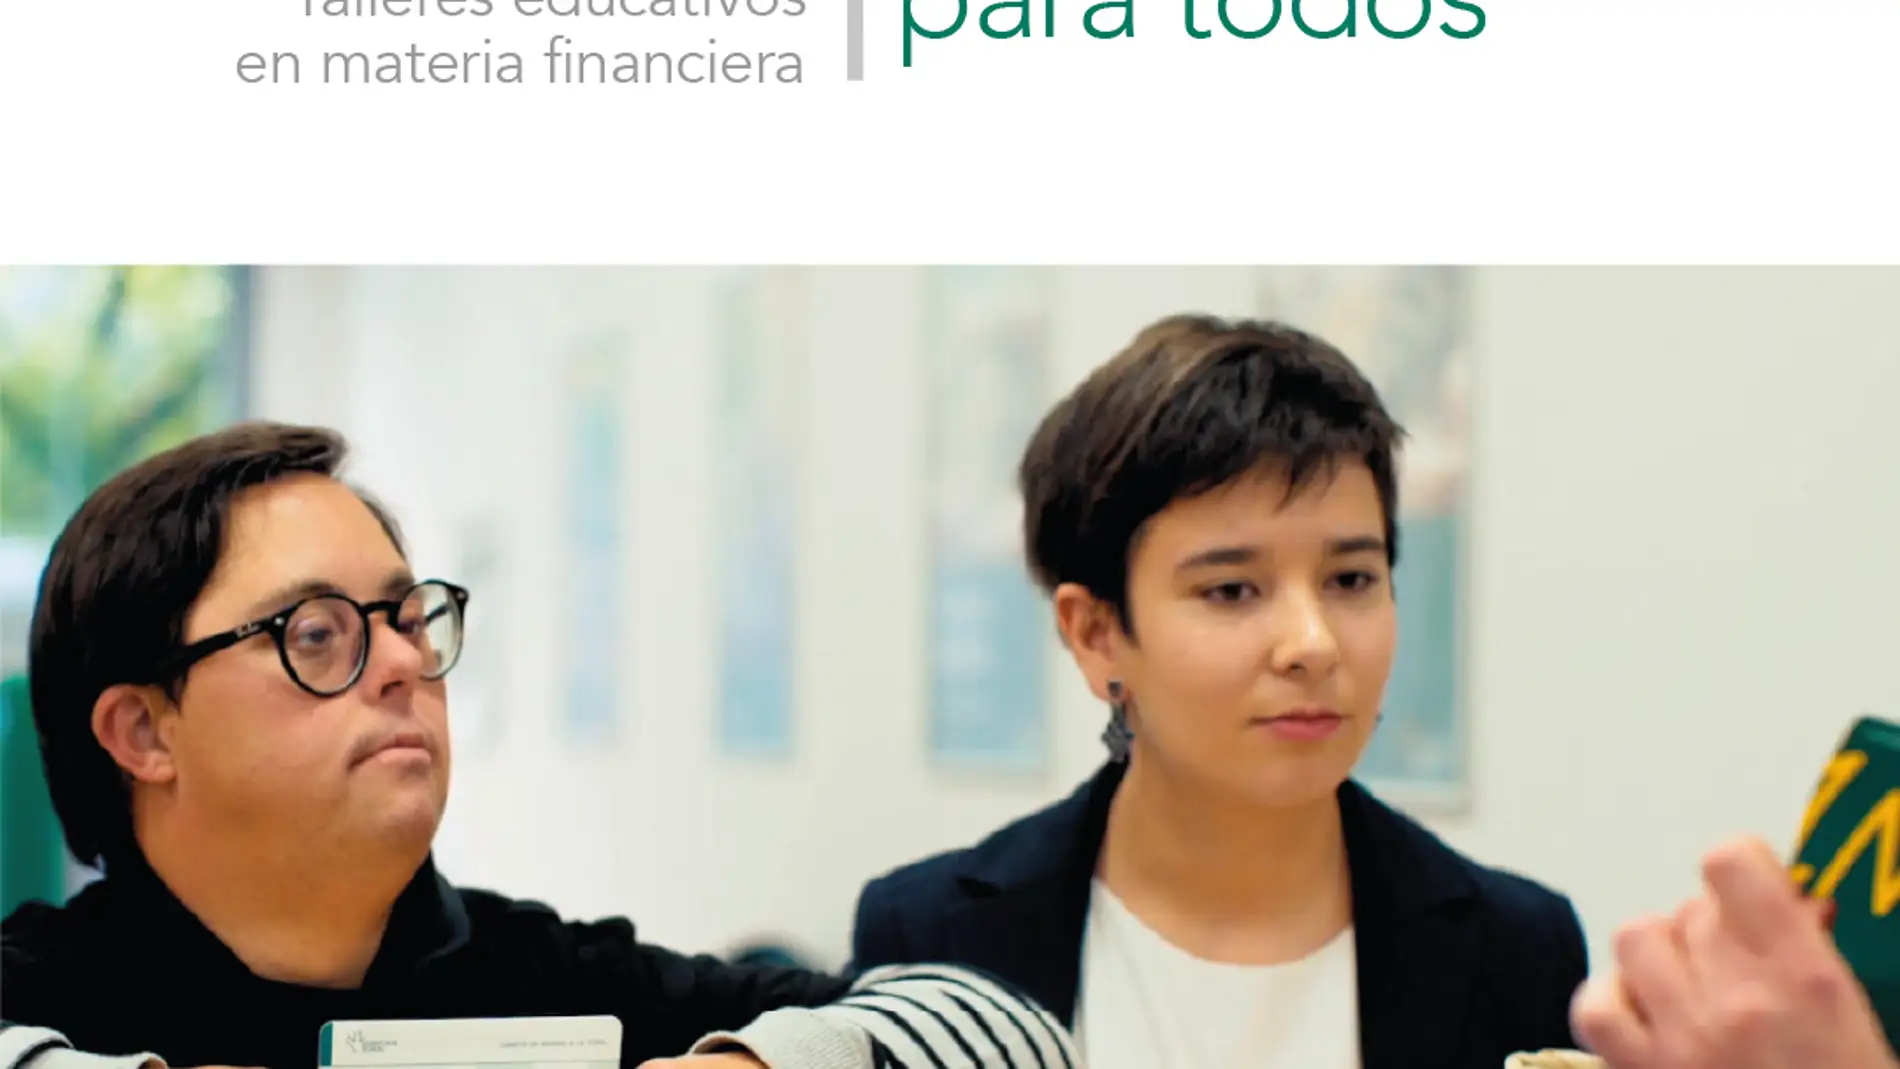 Comienza la nueva edición de talleres en materia financiera 'Economía para todos' de Fundación Eurocaja Rural y Plena Inclusión CLM